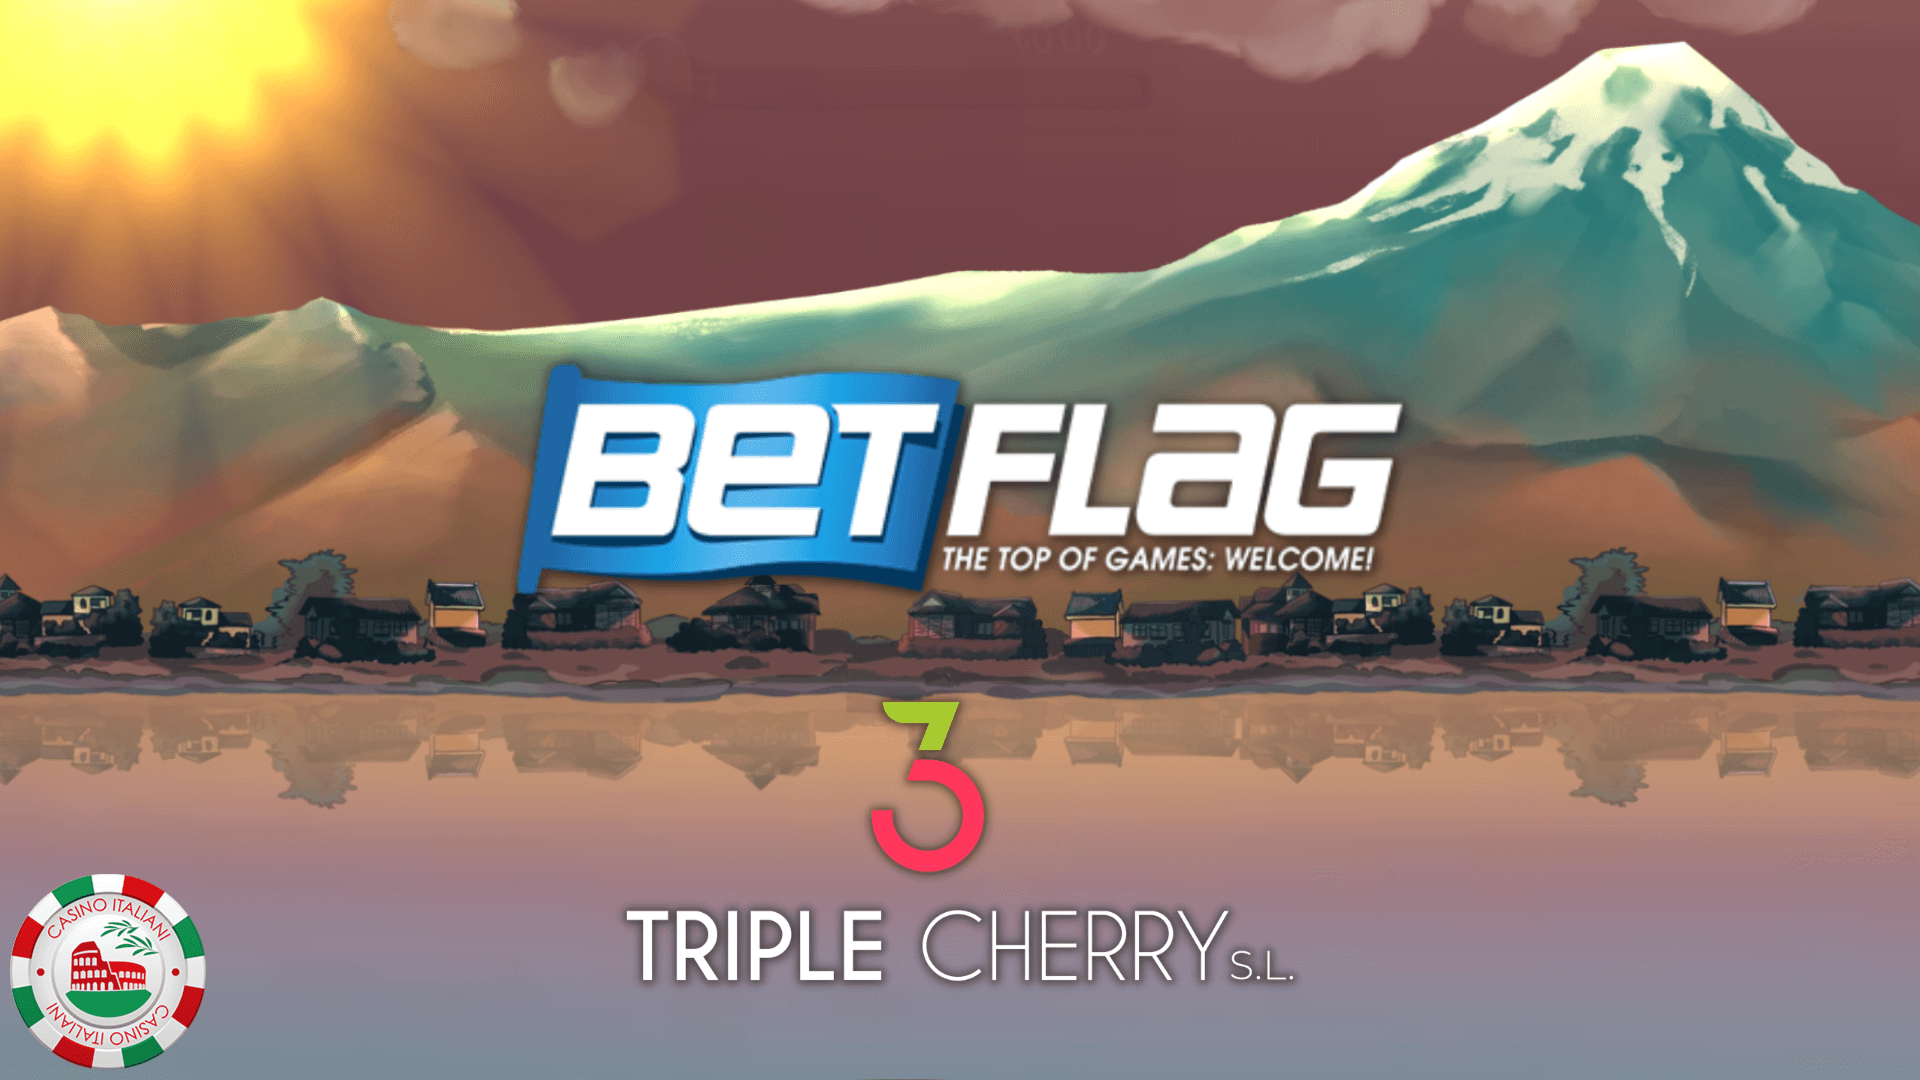 BetFlag annuncia l’accordo con Triple Cherry dopo l’incontro alla Fiera Enada: 16 nuove slot già in catalogo